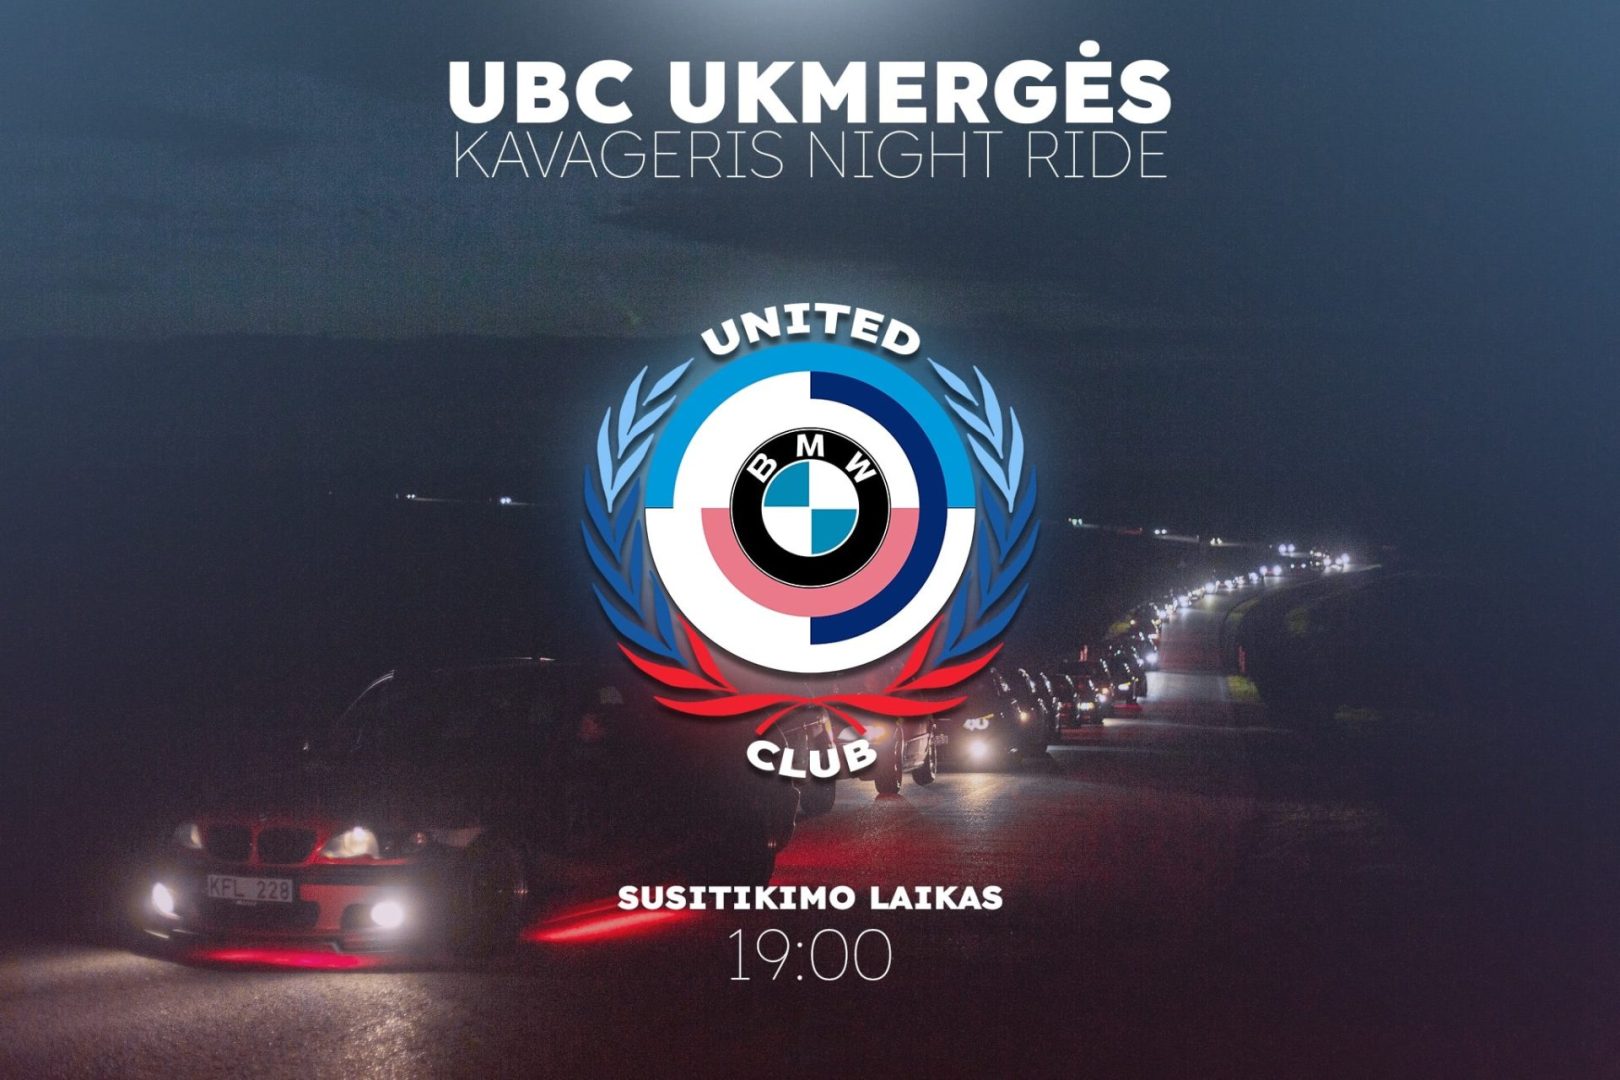 UBC Ukmergės kavageris night ride